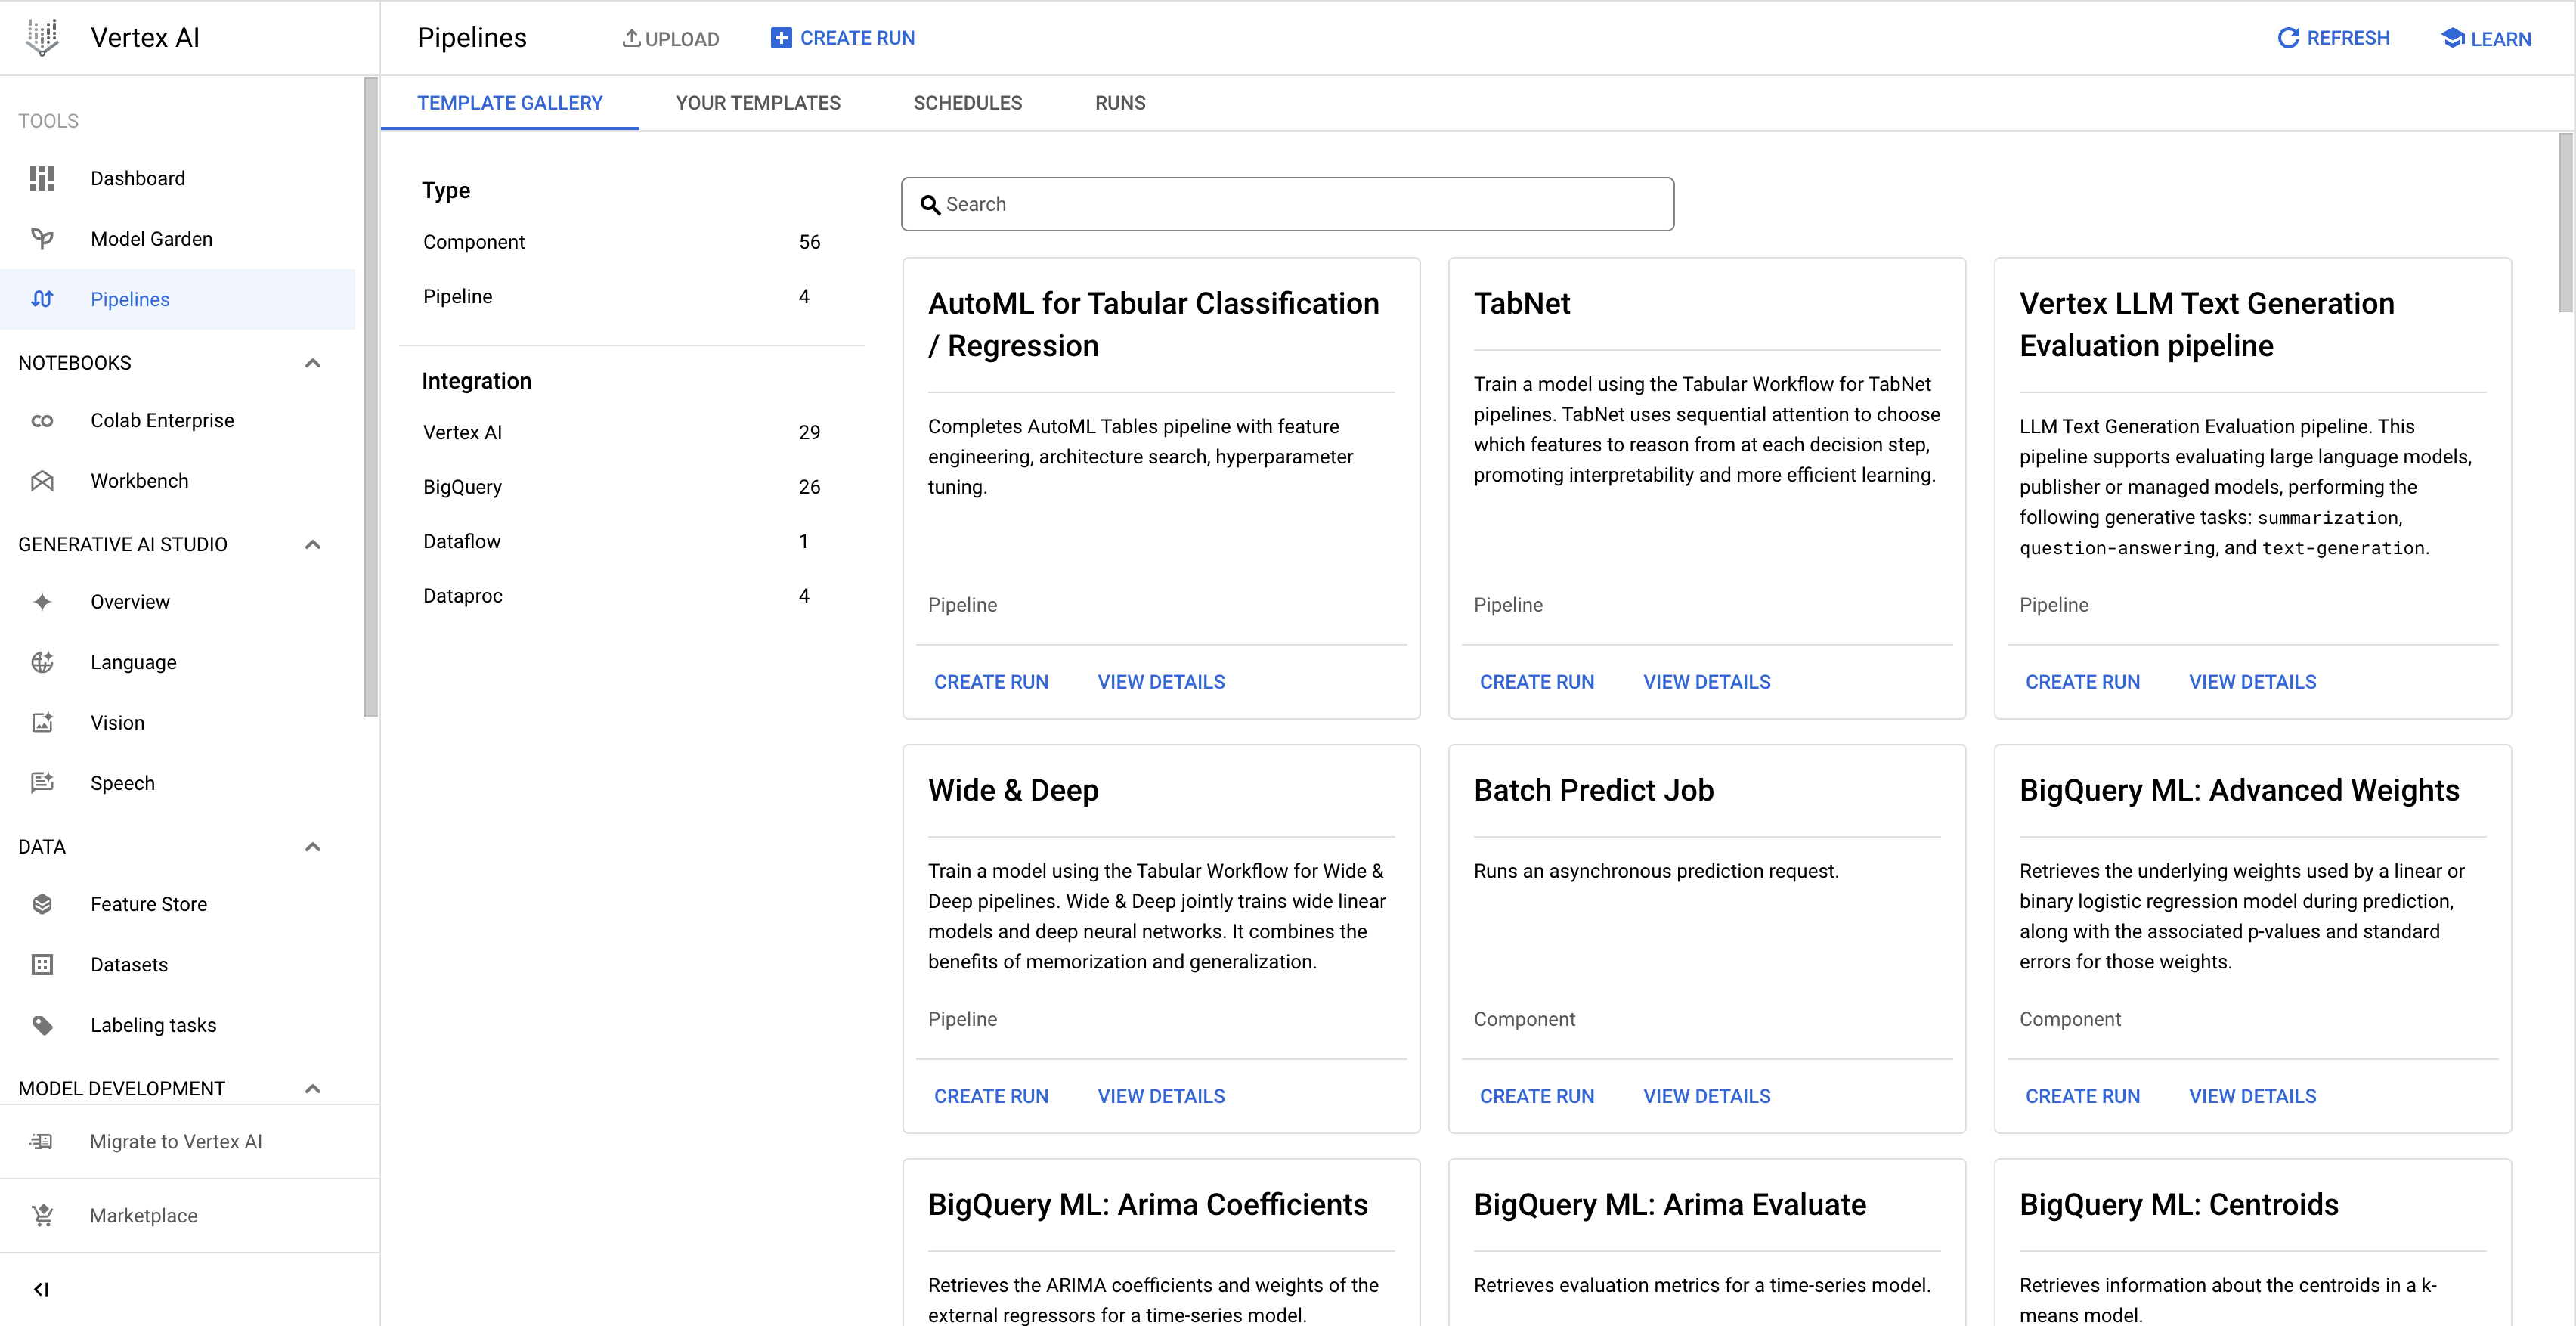 Mostra a página "Galeria de modelos" com modelos de pipeline autorizados pelo Google para o Tabular Workflows